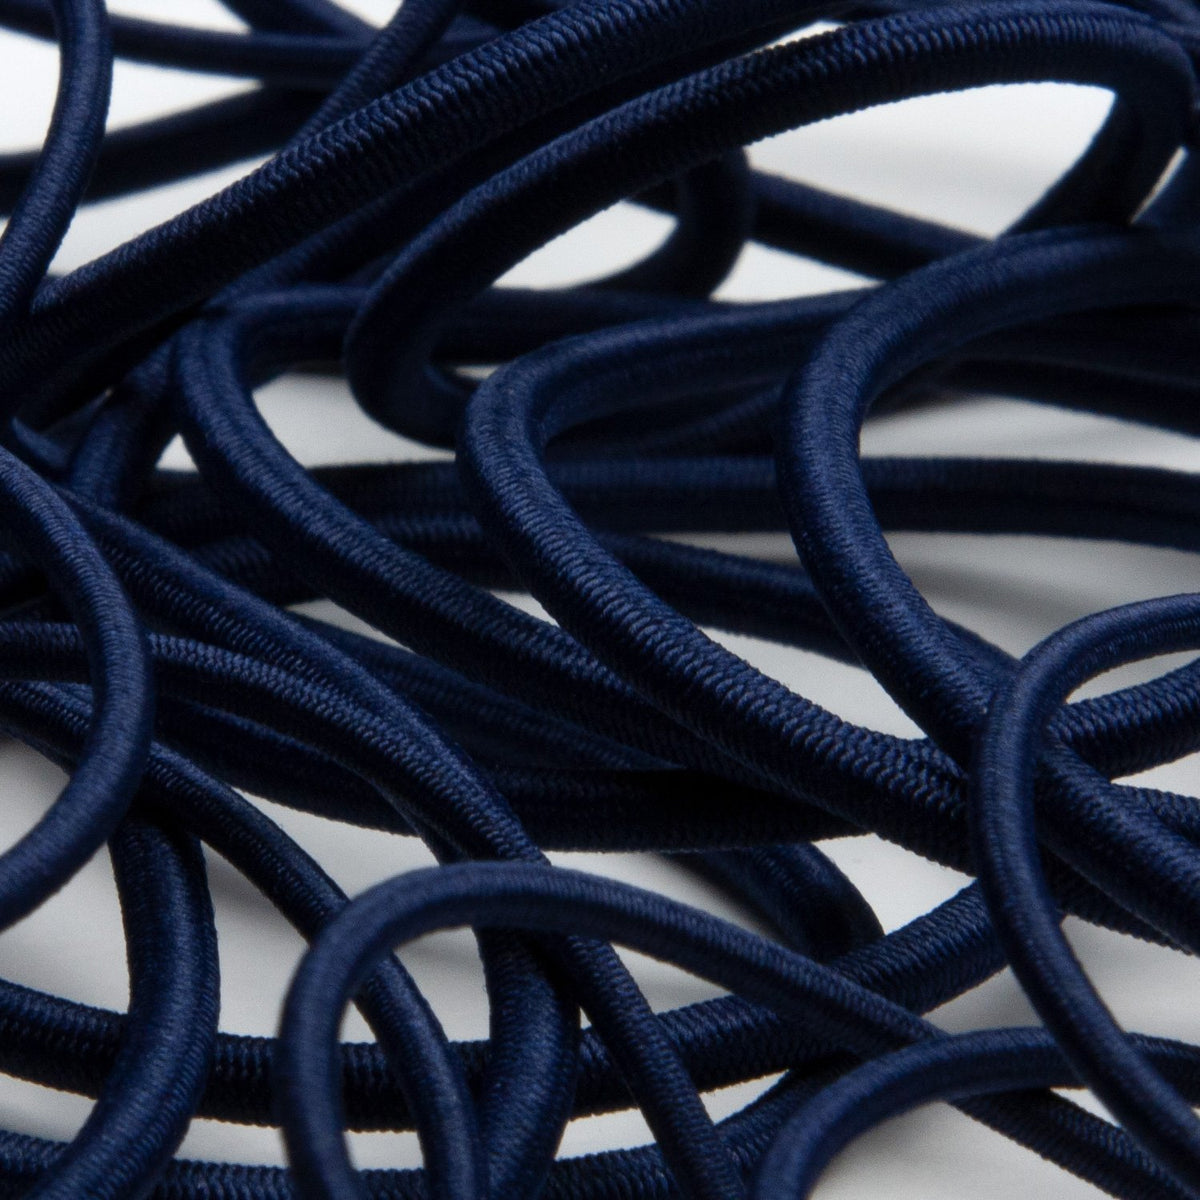 Satin Cord, thickness 2 mm, dark blue, 50 m/ 1 roll